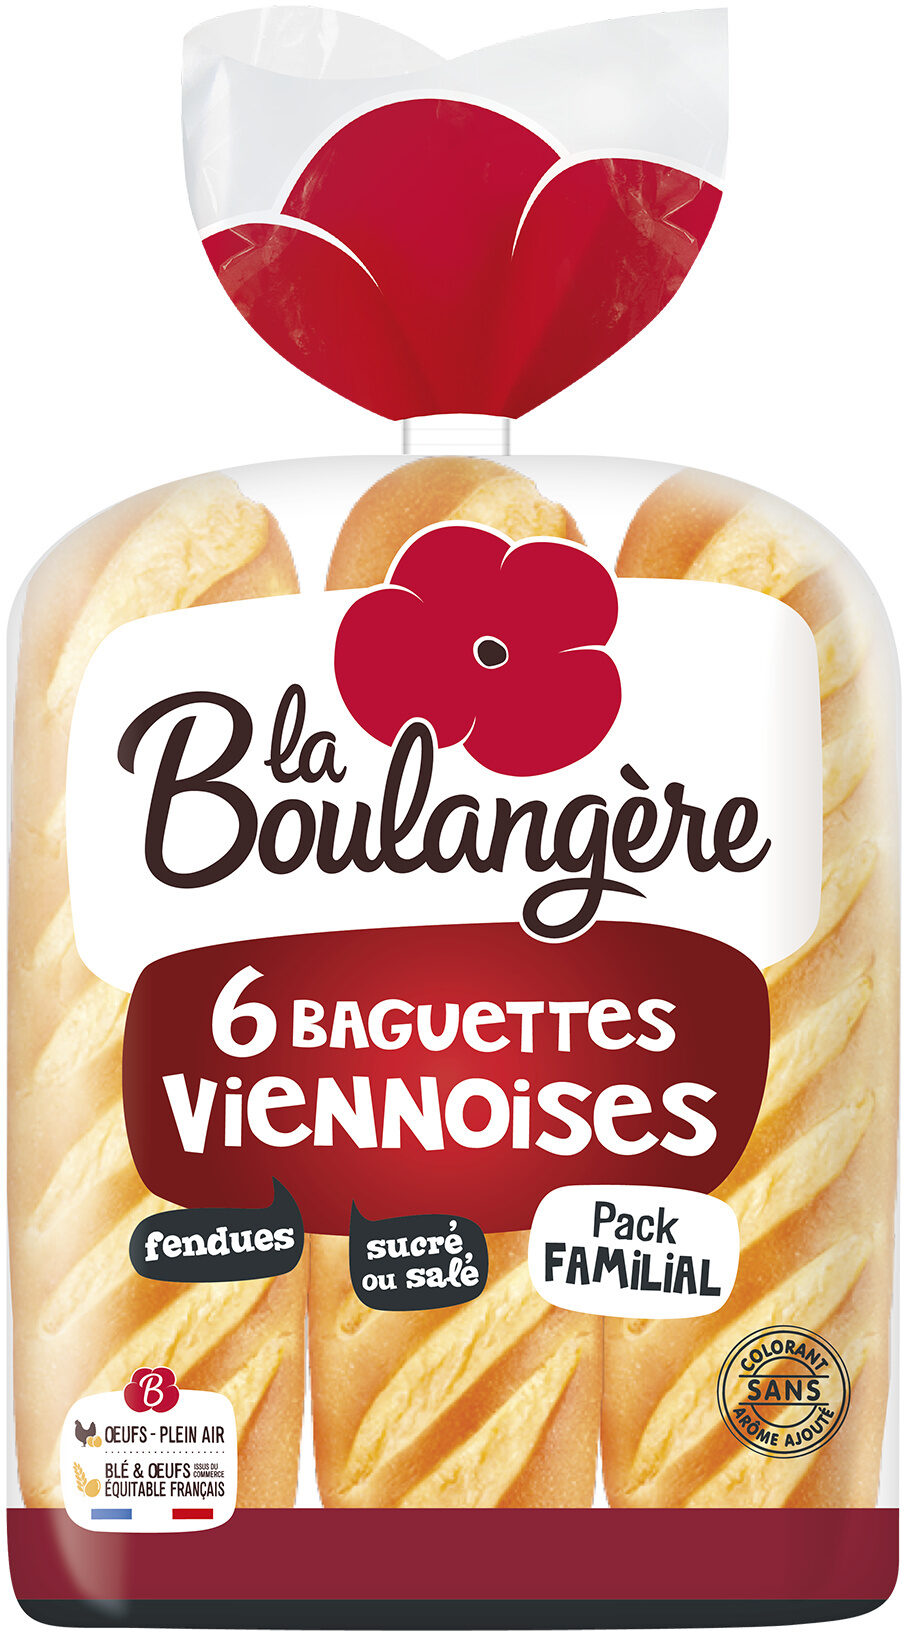 Baguettes Viennoises - نتاج - fr